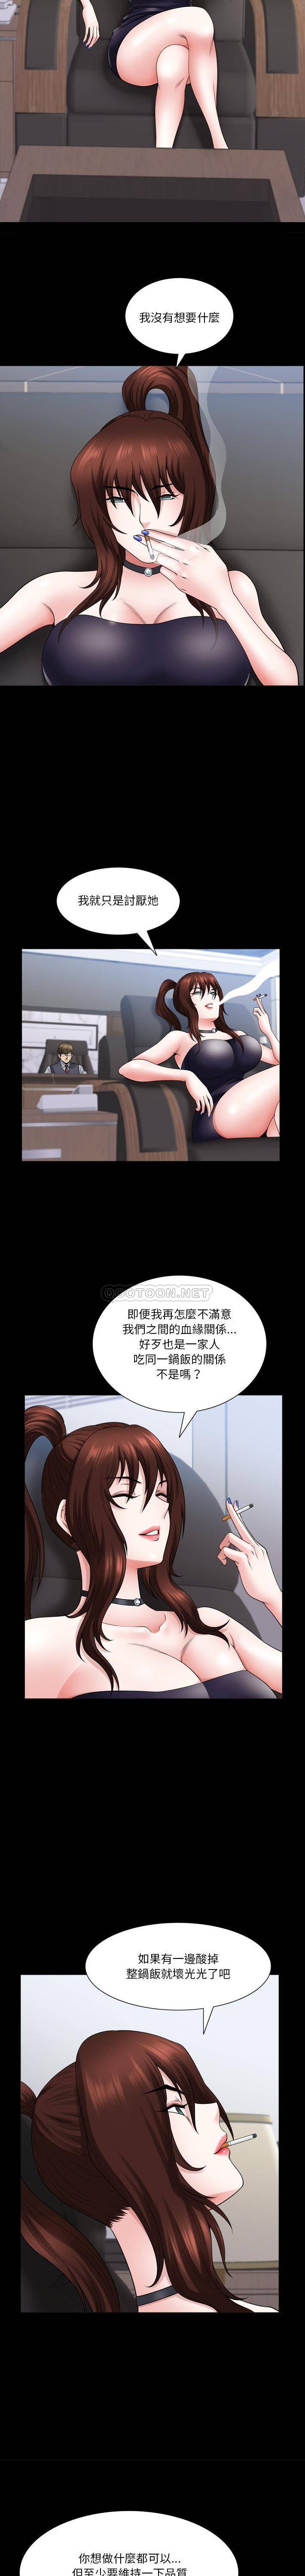 韩国污漫画 墮落的人生 最终话 3